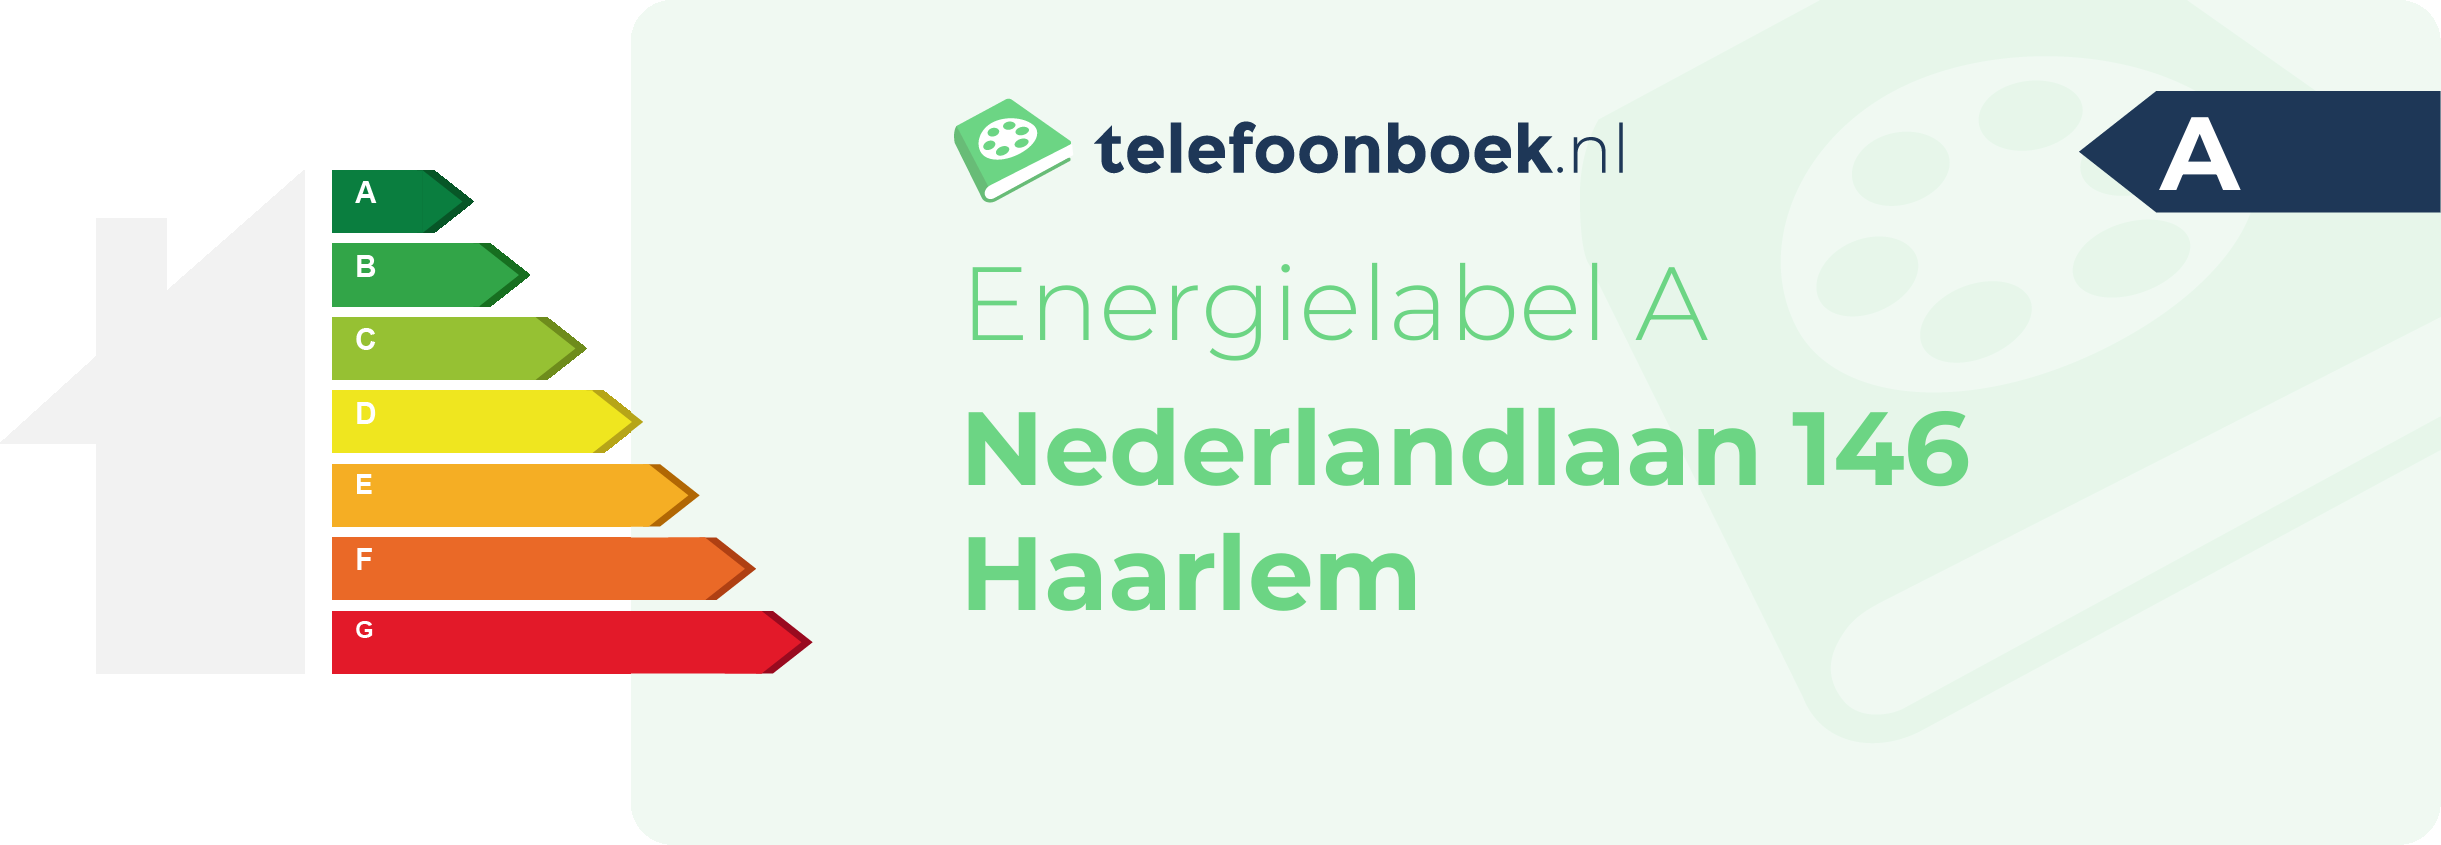 Energielabel Nederlandlaan 146 Haarlem